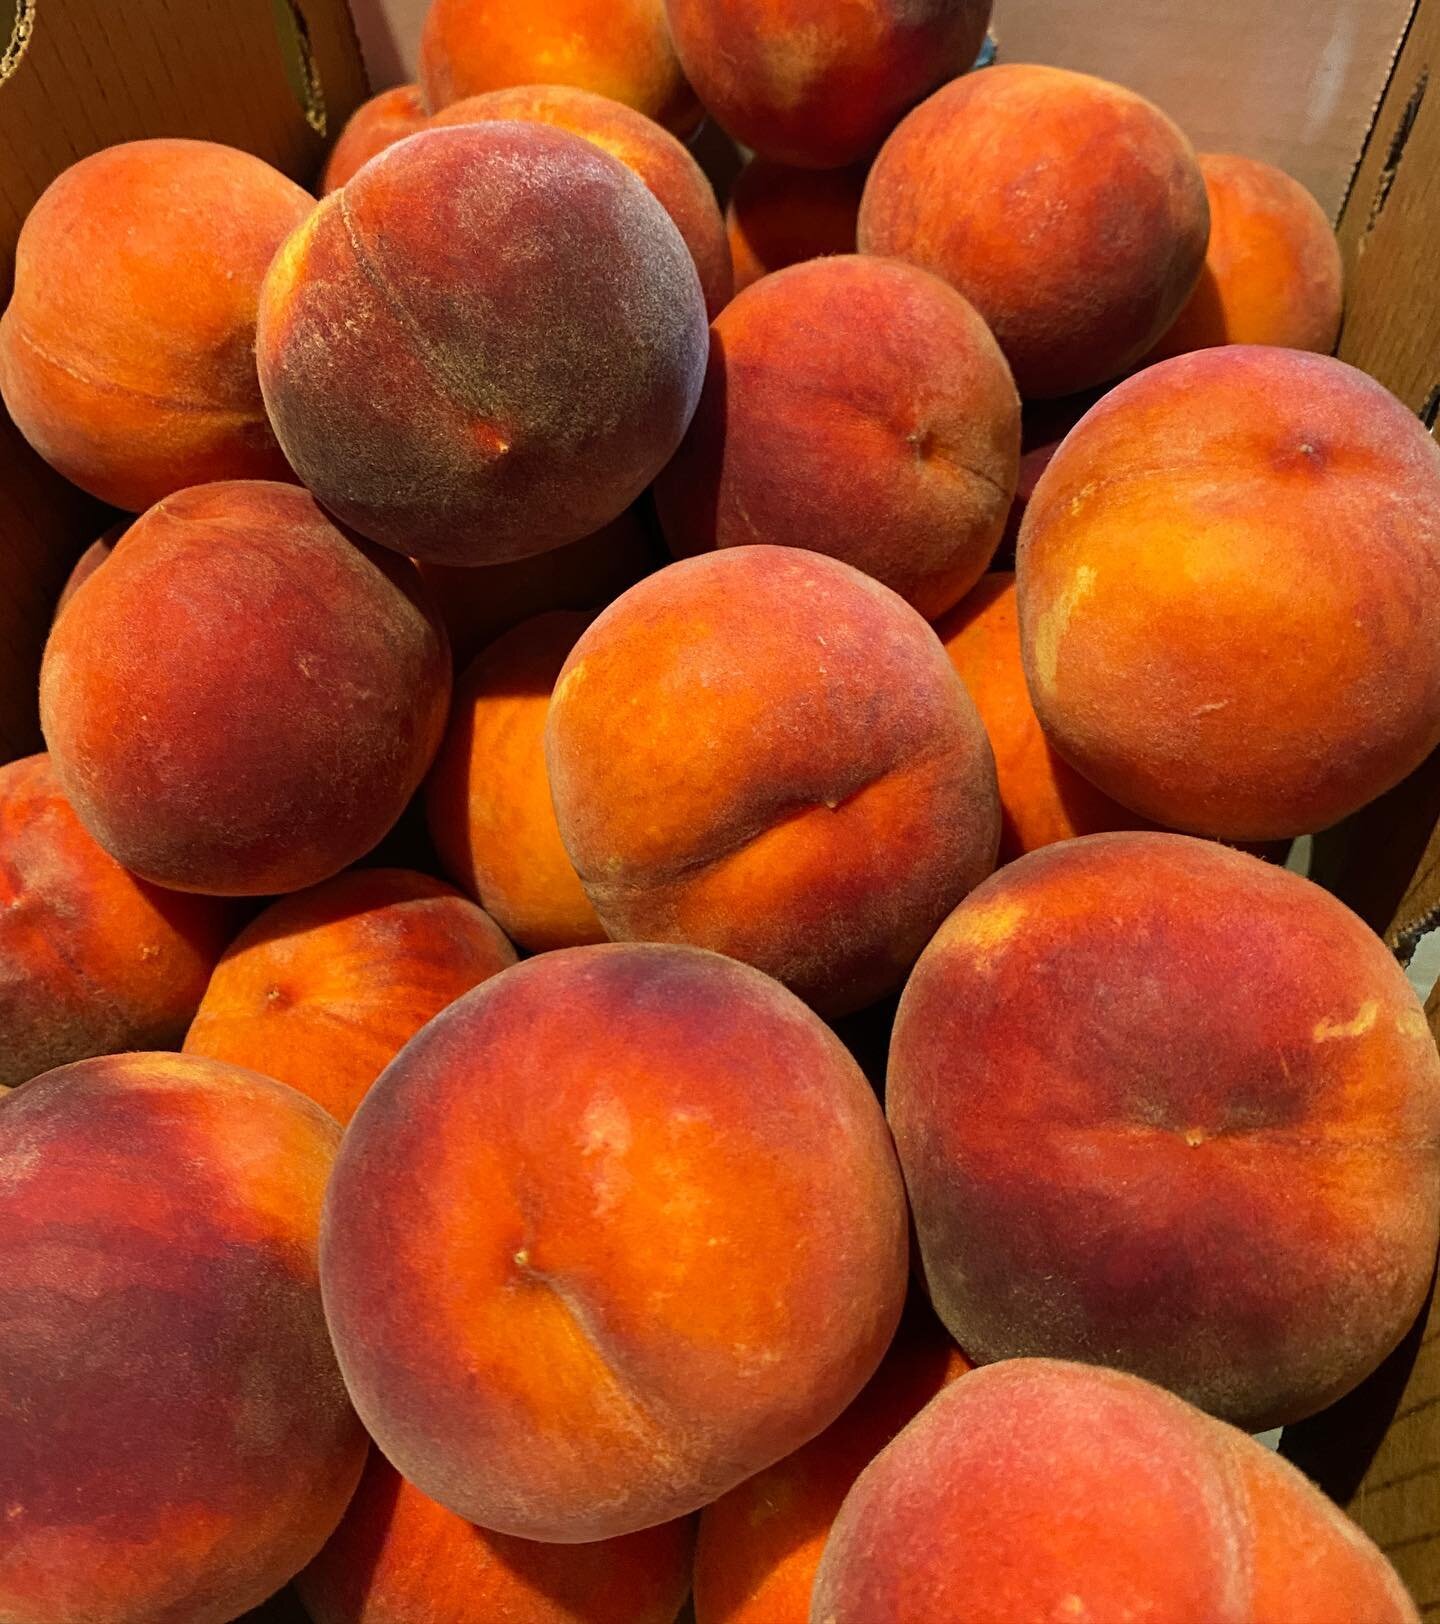 Coming soon: peach pepper jam, peach crisp, and juice dribbling peach eating! 
#peaches  #peachy #palisadepeaches #peachfest